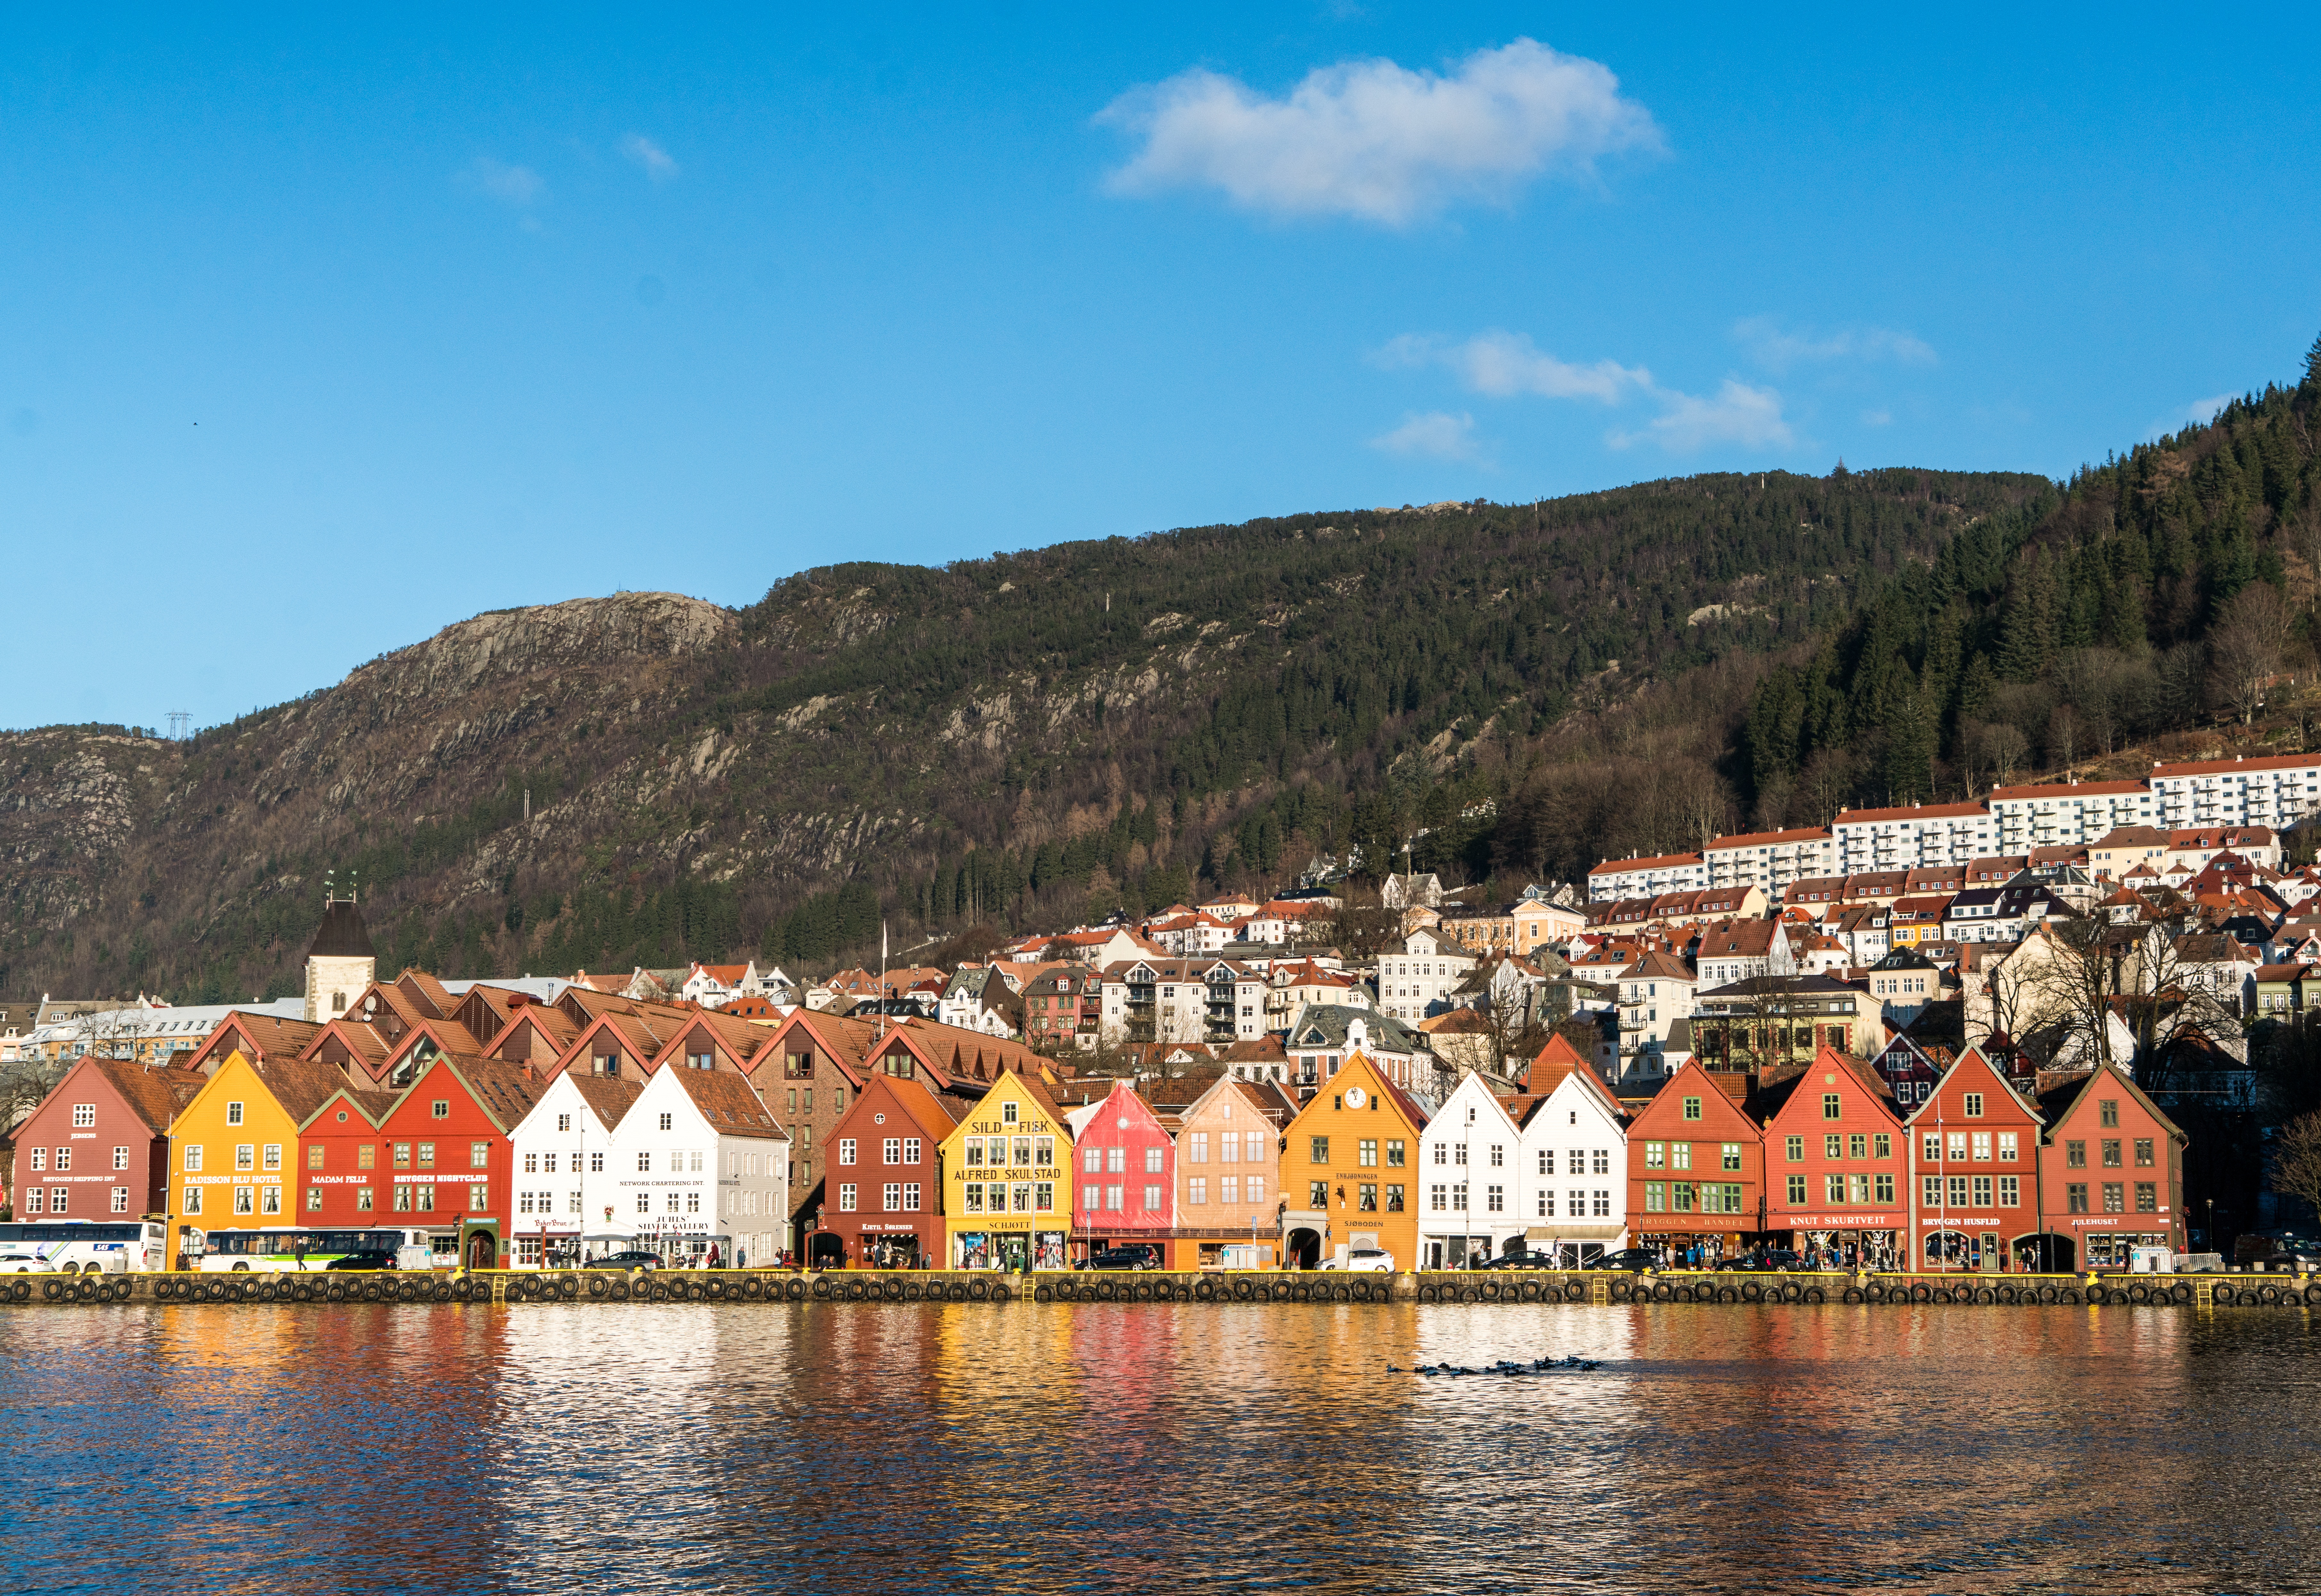 Focus on Scandinavia - Bergen, Norway